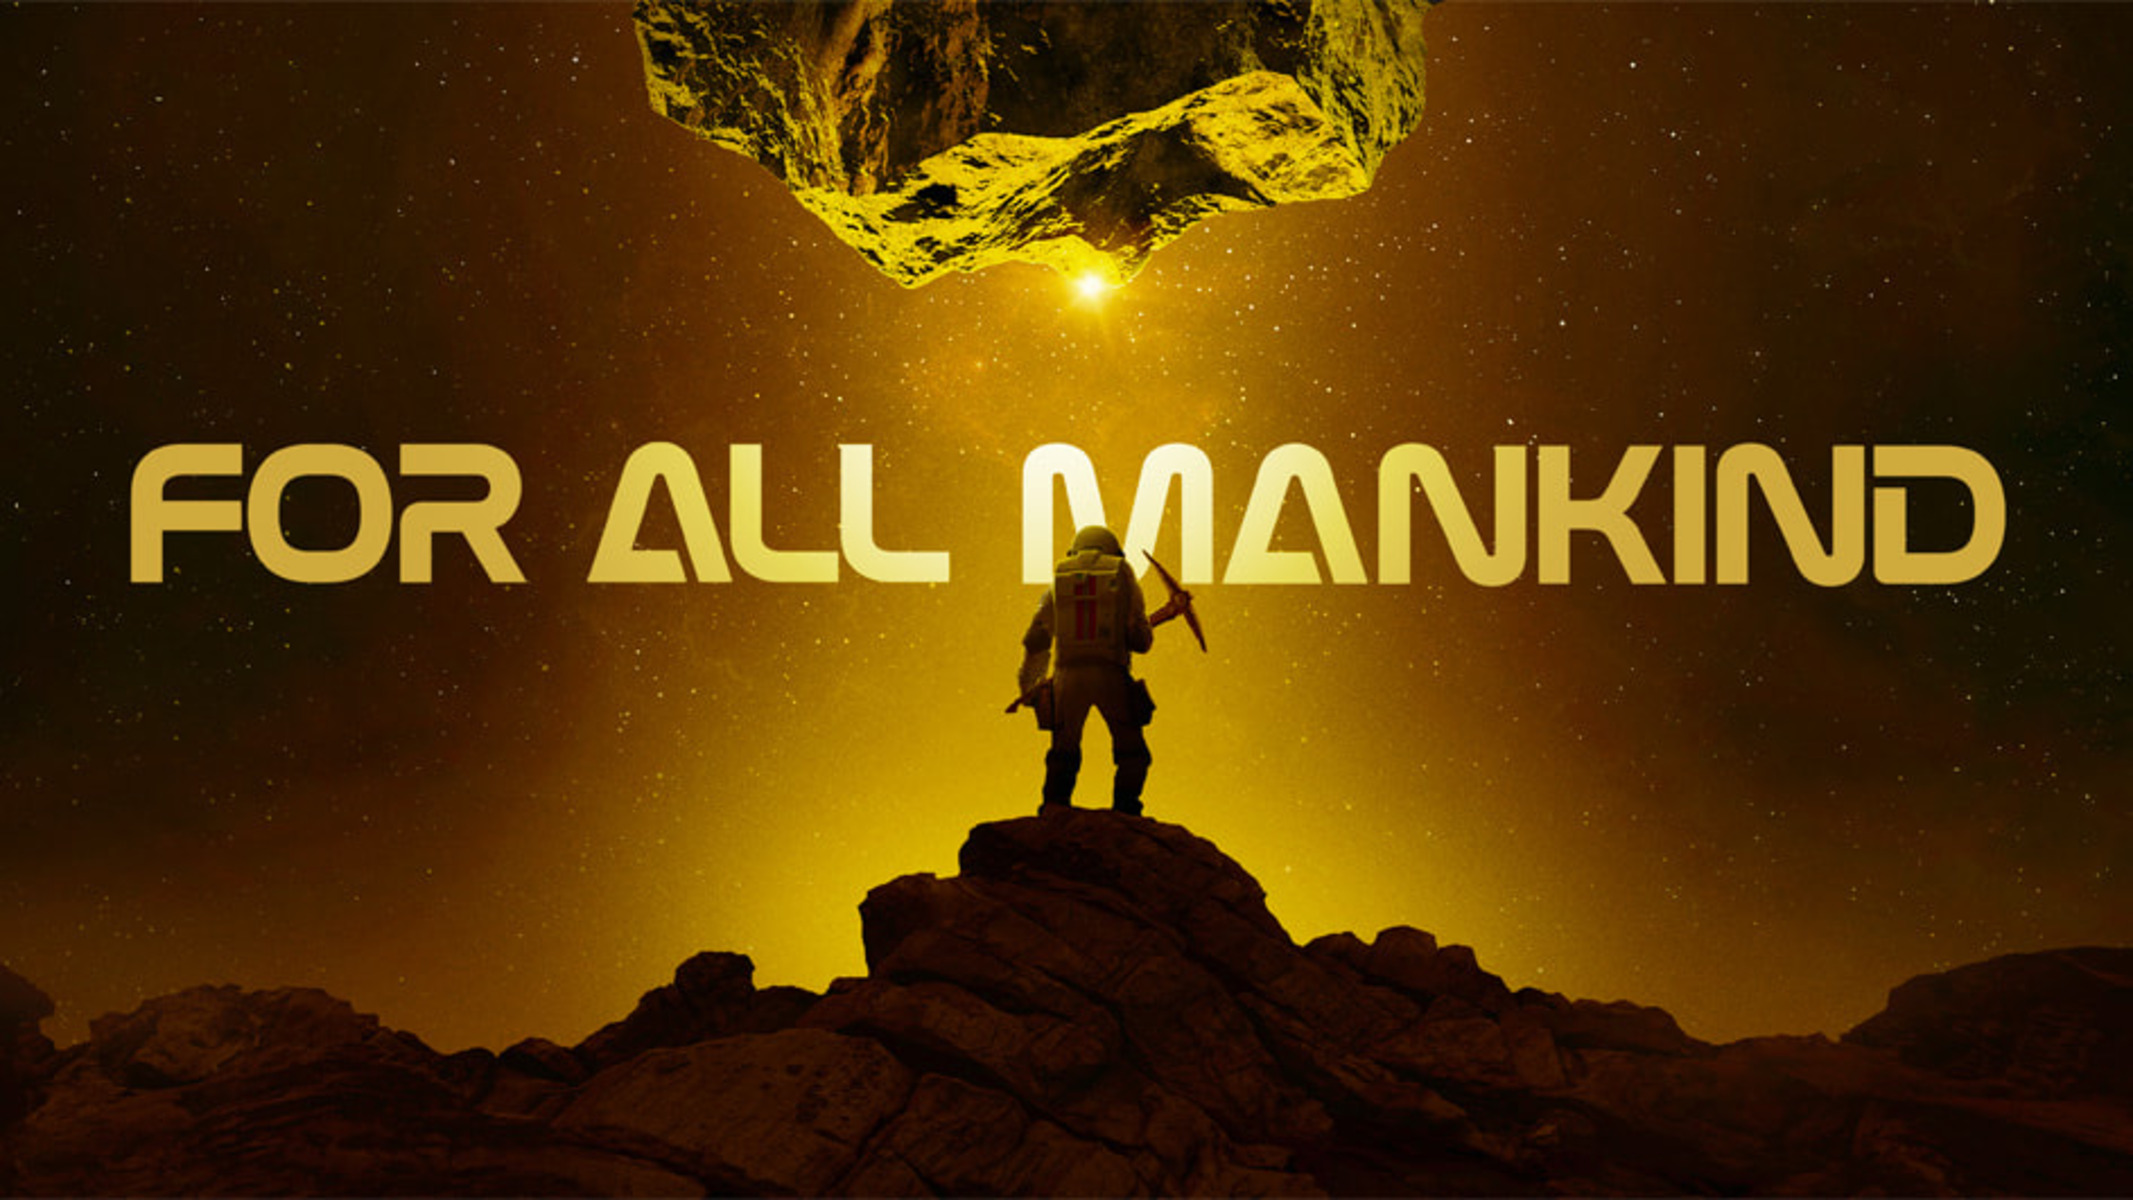 Il poster della serie tv distribuita da AppleTV+ "For All Mankind".